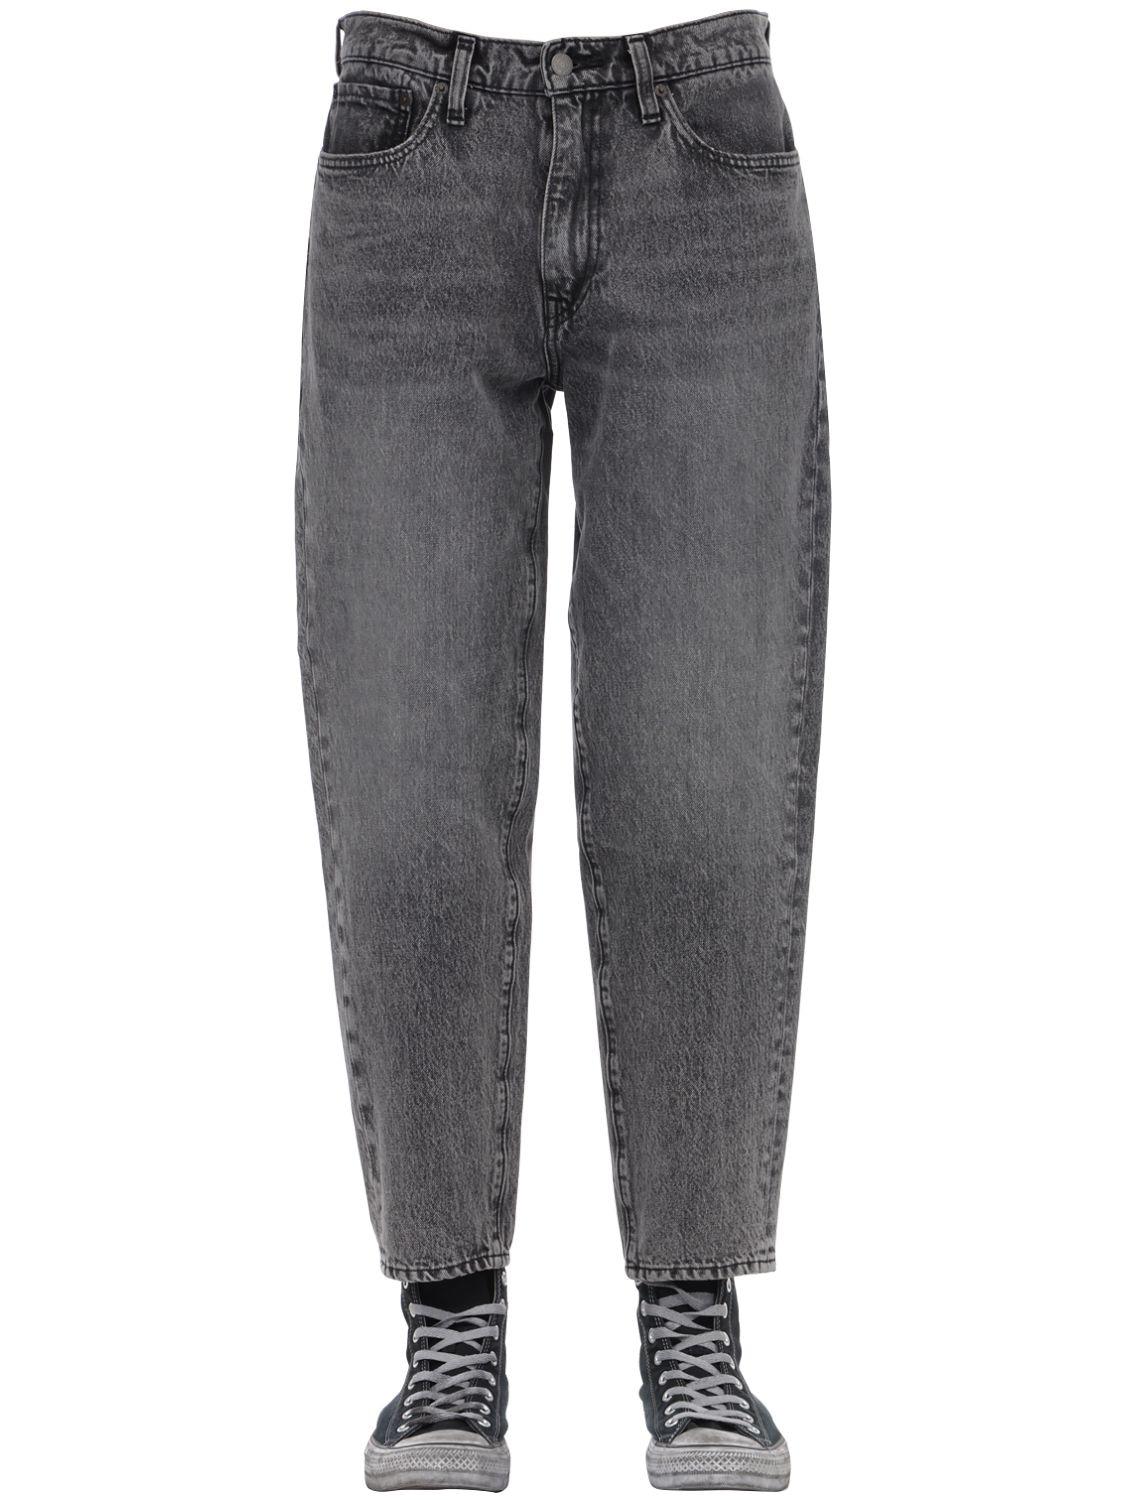 Levi's 562 Loose Taper Adjustable Denim Jeans in Black for Men - Lyst